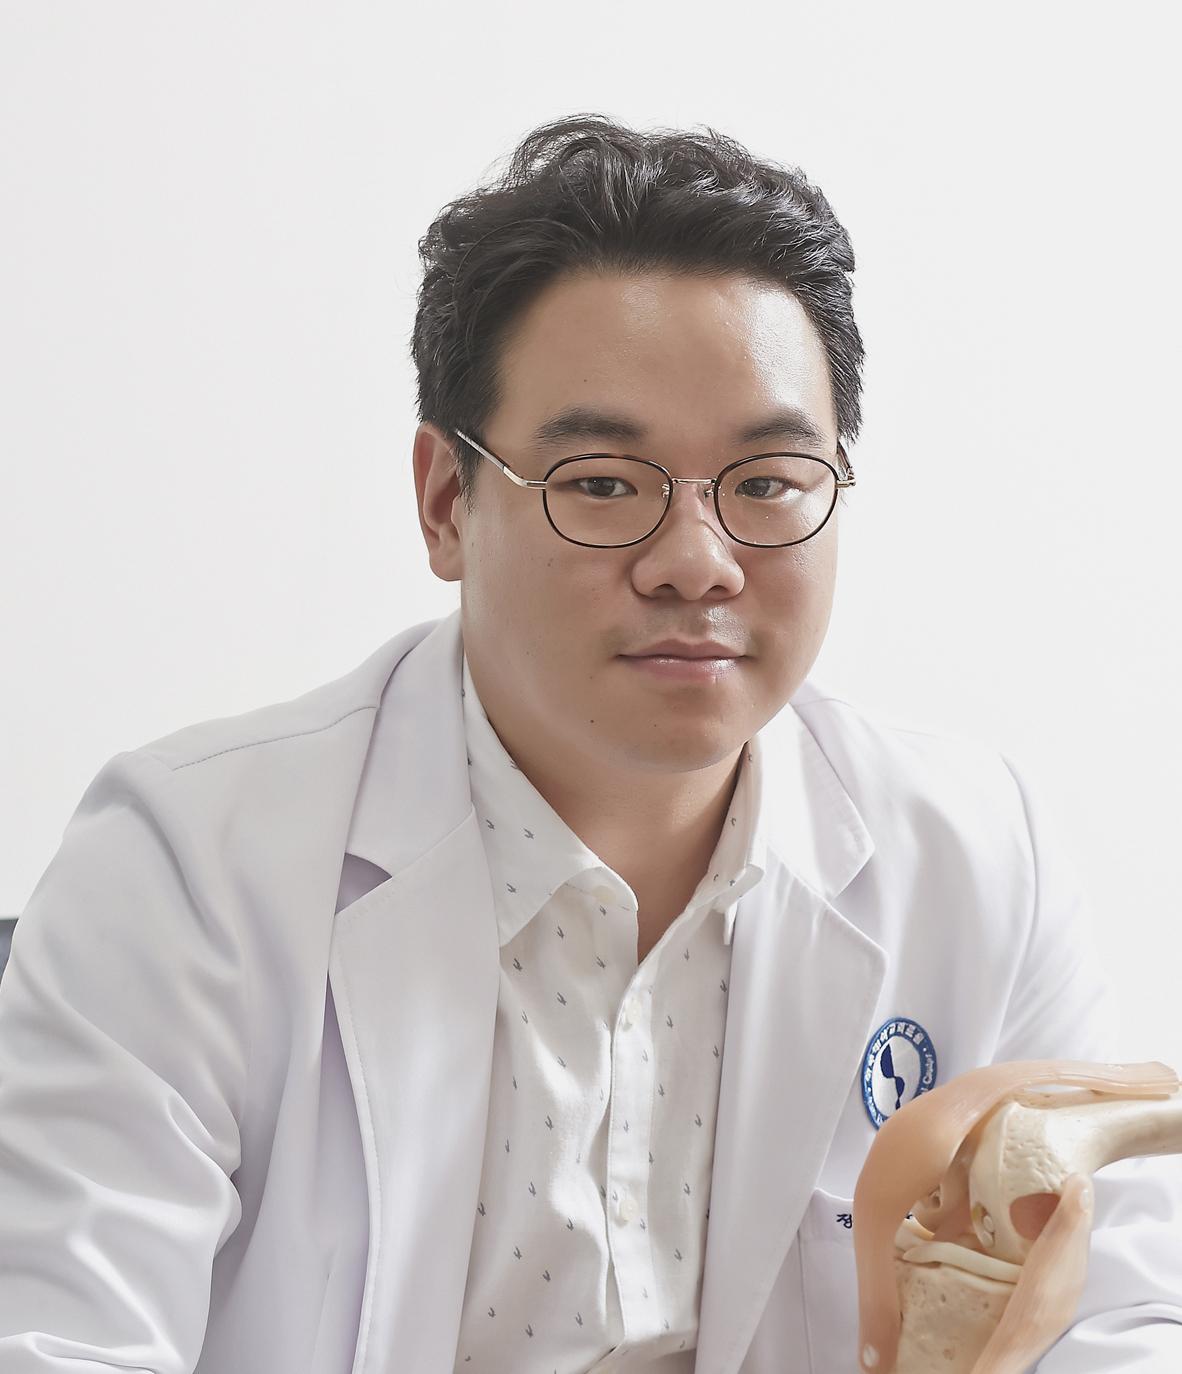 아주대병원 박도영 교수, 대한연골 및 골관절염학회 신진연구자상 수상